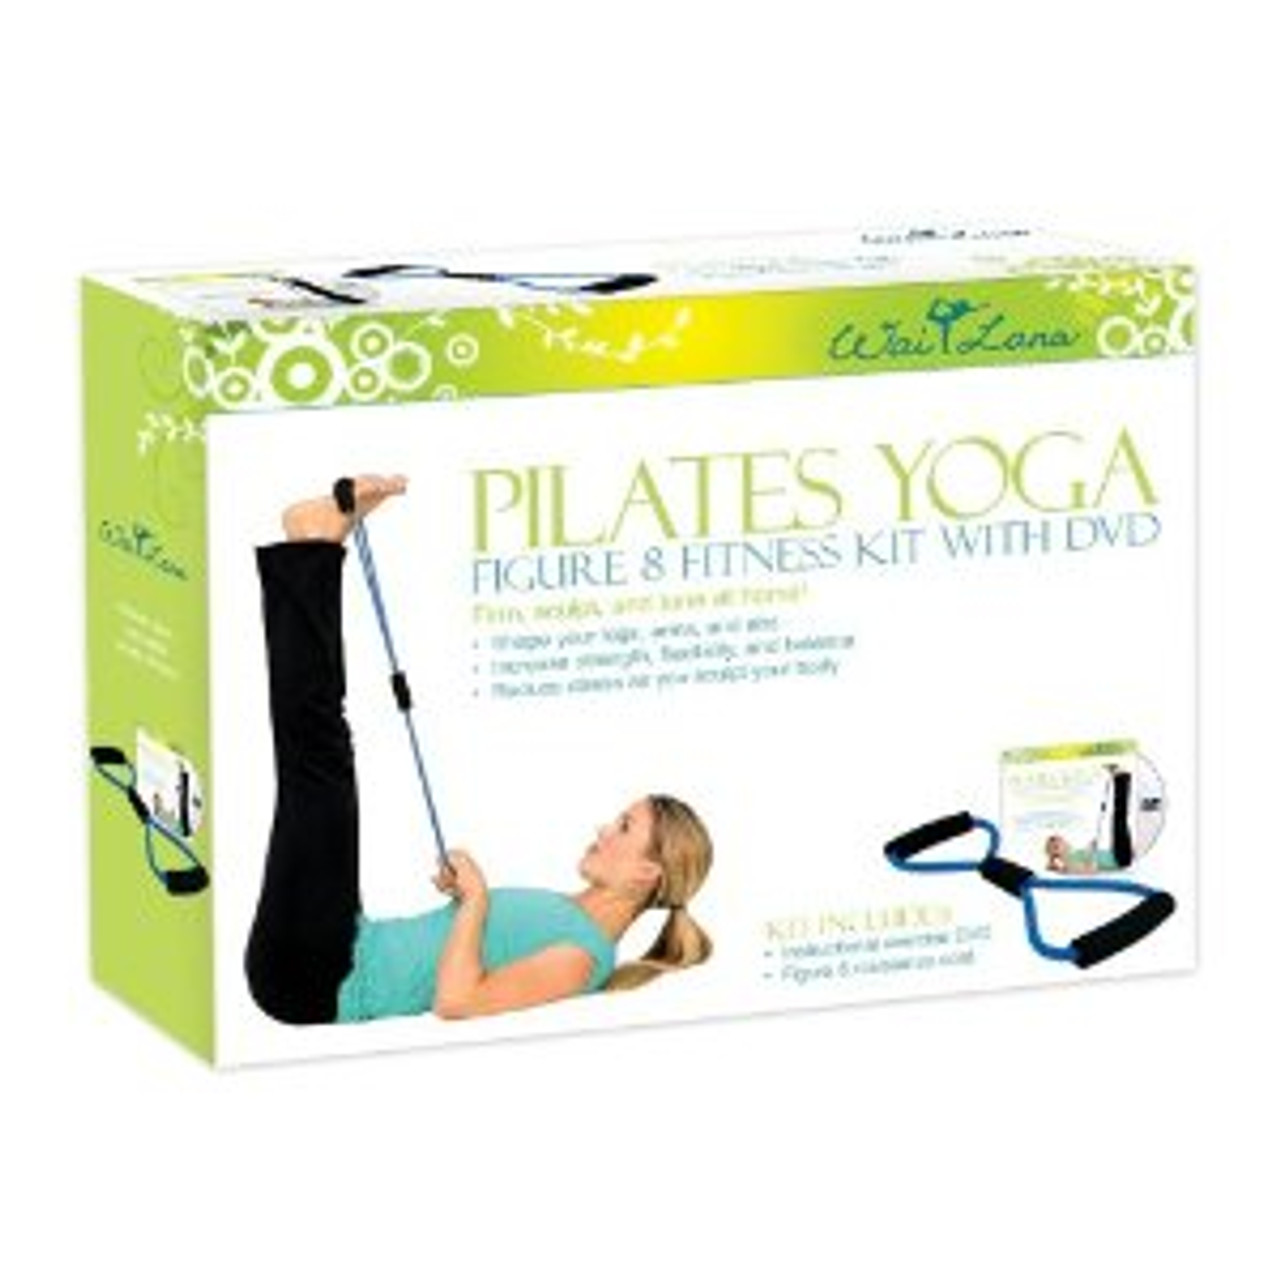 Pilates Yoga Figure 8 Kit